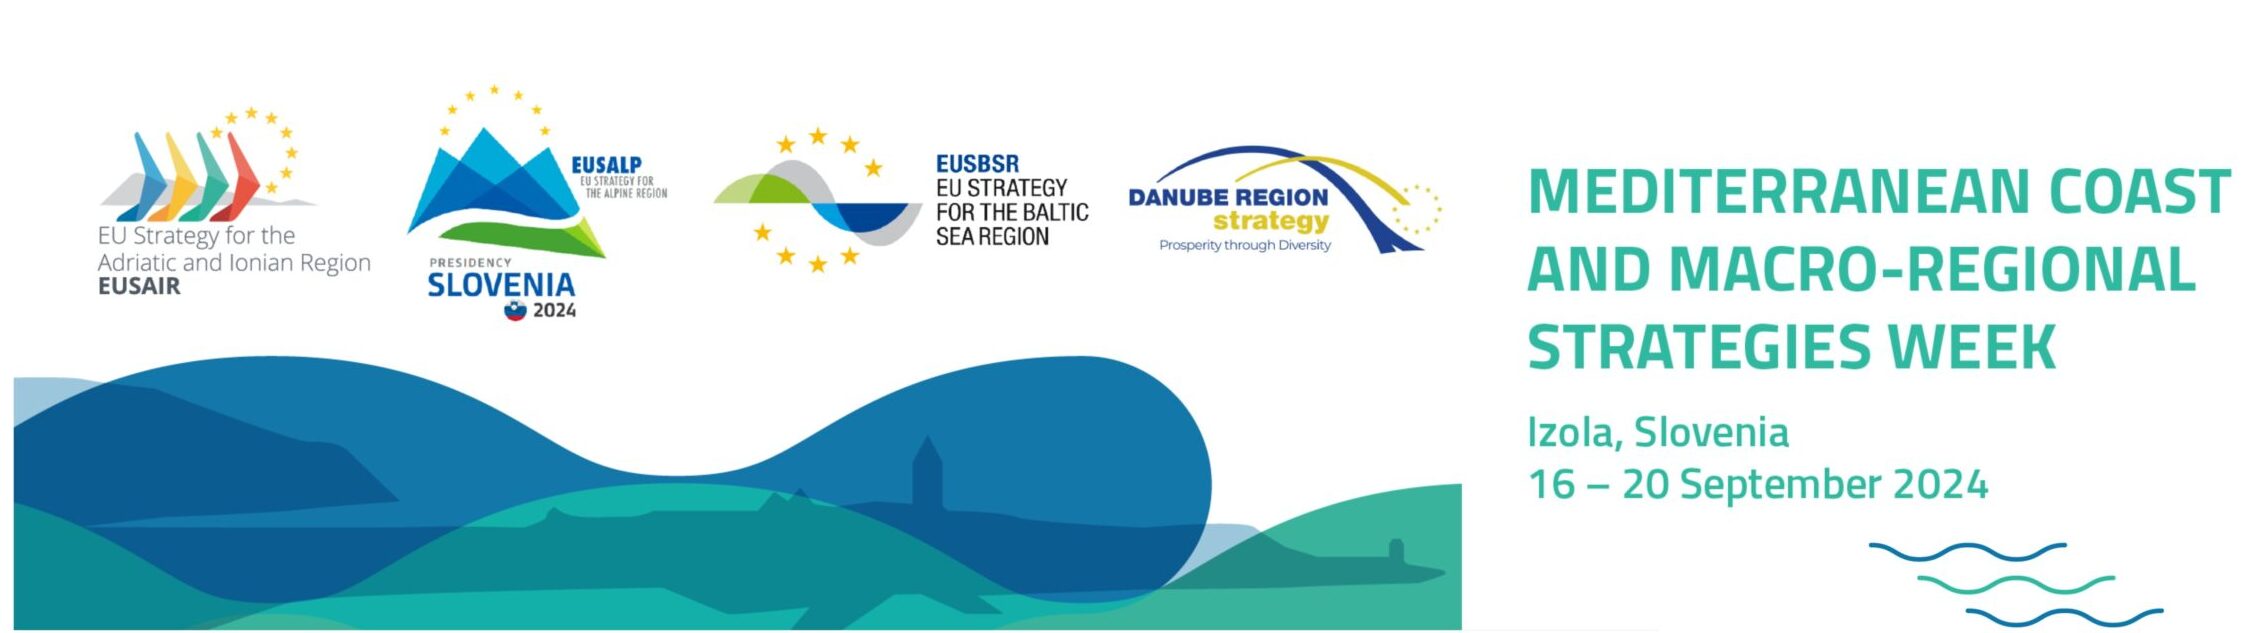 Mittelmeerküste und makroregionale Strategien Woche 2024 © EUSAIR